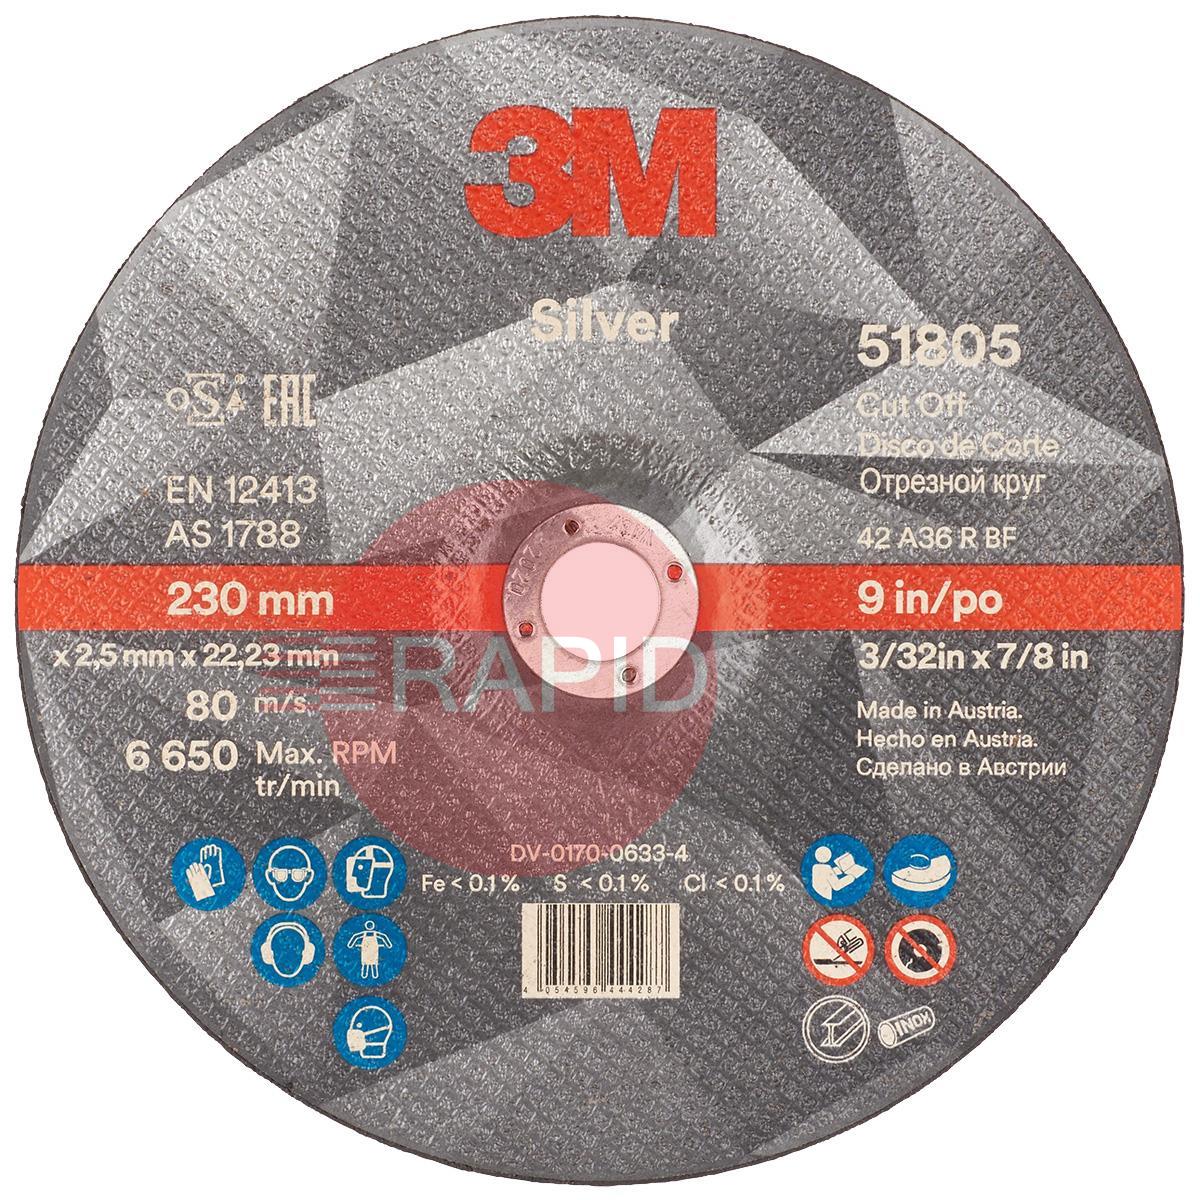 3M-51805  3M Silver Depressed Cut-Off Wheel 230mm x 2.5mm x 22.23mm (Box of 25)